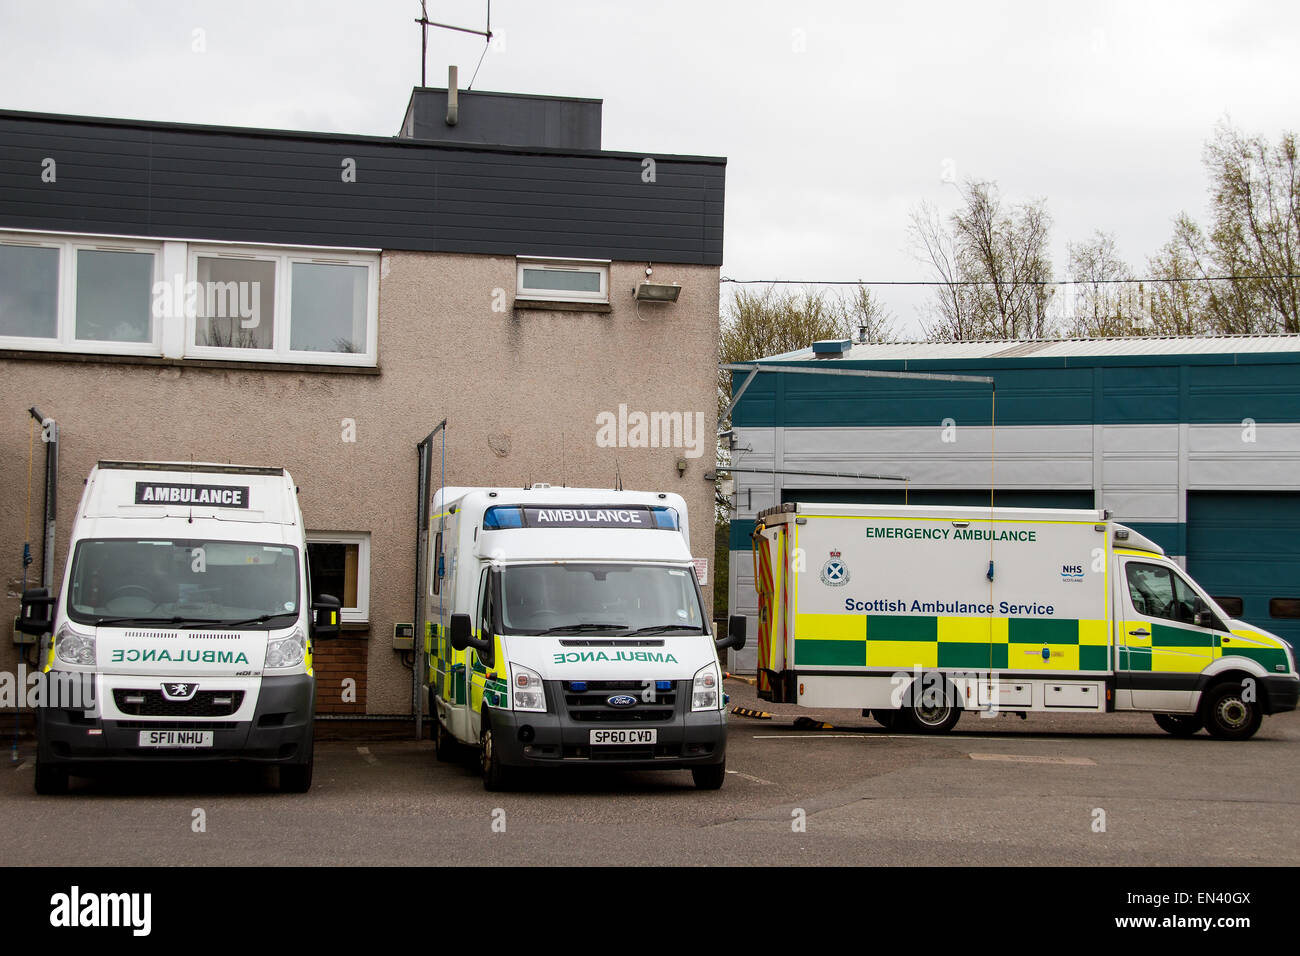 Die NHS schottischer Krankenwagen-Service Osten Zentraldepot befindet sich am 76 West School Road in Dundee, Großbritannien Stockfoto